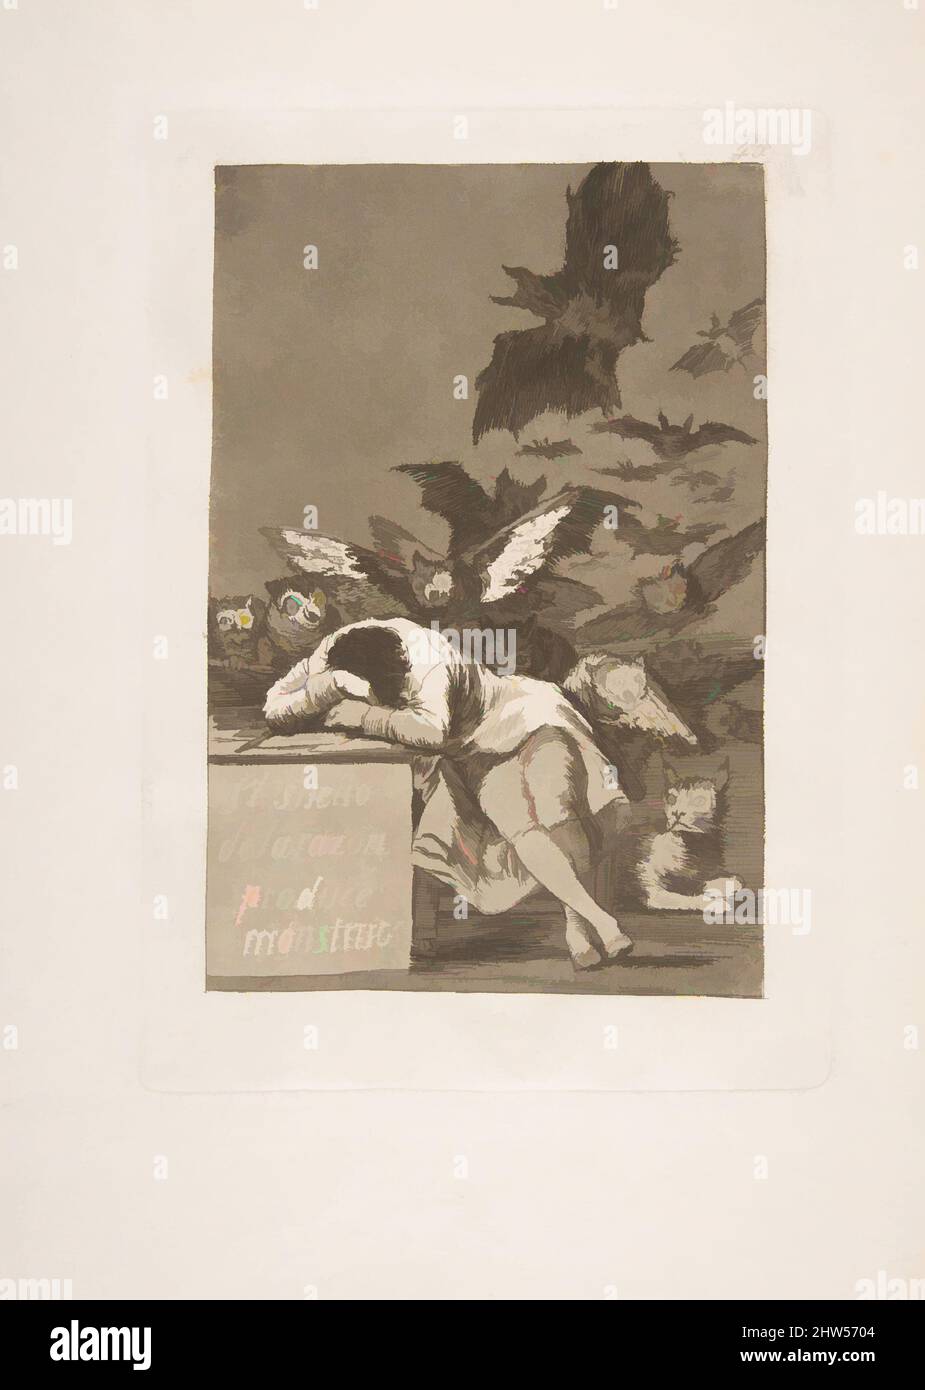 Art inspiré par la planche 43 de 'Los Caprichos': Le sommeil de la raison produit des monstres (El sueño de la razon produire monstruos), 1799, Etching, aquatint, point sec, Et burin, plaque : 8 3/8 x 5 15/16 po. (21,2 x 15,1 cm), Prints, Goya (Francisco de Goya y Lucientes) (Espagnol, Fuendetodos, oeuvres classiques modernisées par Artotop avec une touche de modernité. Formes, couleur et valeur, impact visuel accrocheur sur l'art émotions par la liberté d'œuvres d'art d'une manière contemporaine. Un message intemporel qui cherche une nouvelle direction créative. Artistes qui se tournent vers le support numérique et créent le NFT Artotop Banque D'Images